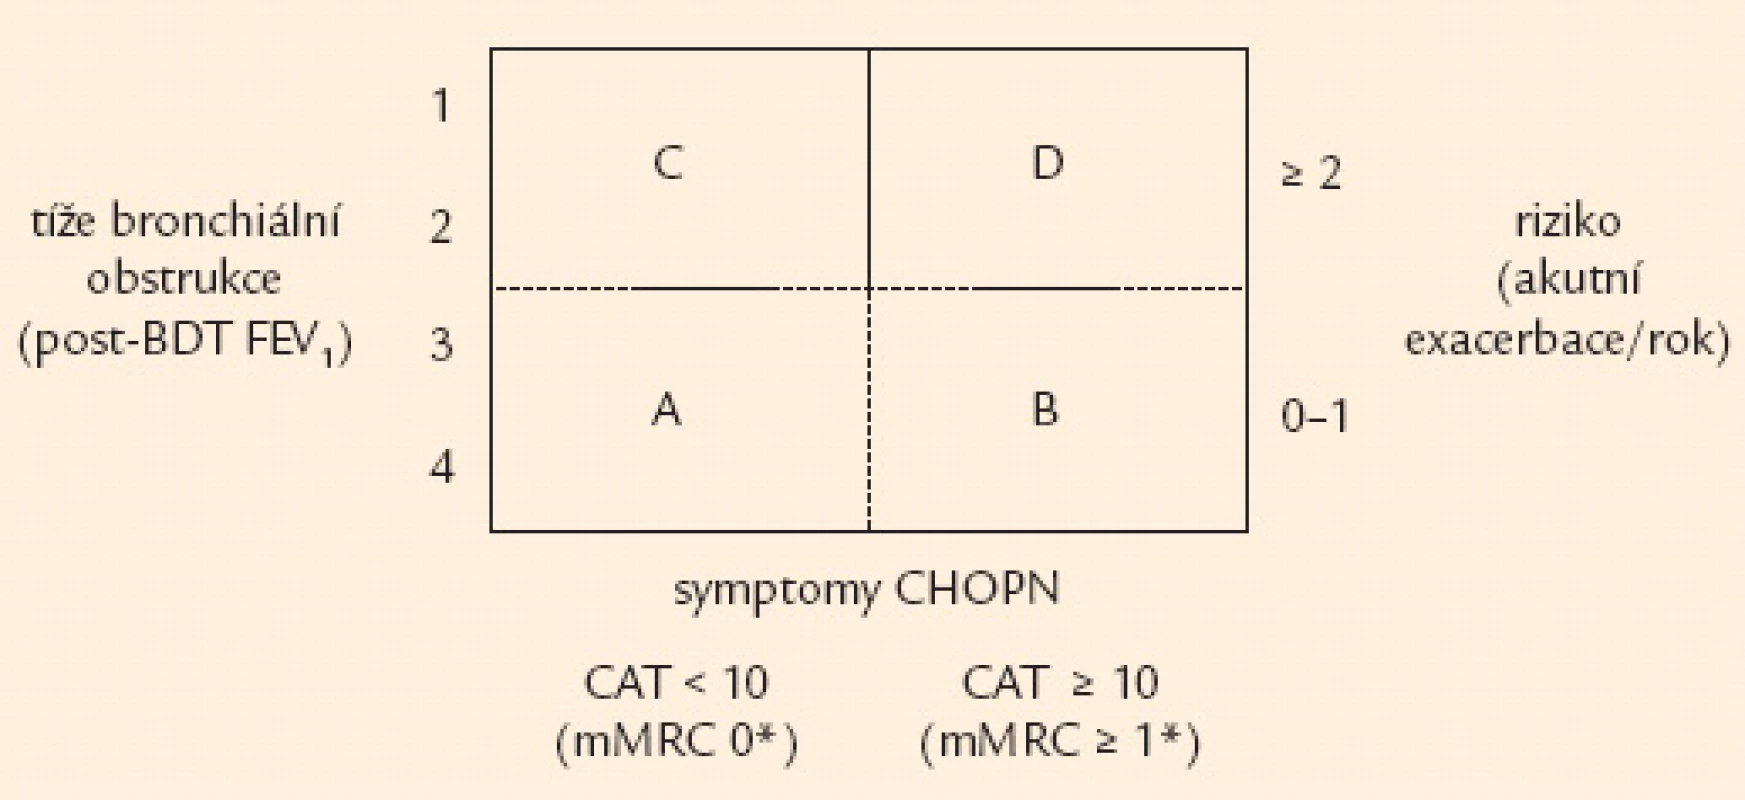 Klasifikace CHOPN dle Doporučení ČPFS [8]. 
Kategorie CHOPN převzaty s korekcí* z aktuální verze GOLD (2013) [8] – při nesouladu kritérií na stejné ose (např. na ose y – při těžké obstrukci a nulových exacerbacích) vždy rozhoduje horší kritérium (tzn. v našem případě těžká bronchiální obstrukce). Specialista bude klasifi kace CHOPN používat v následujícím tvaru: tíže obstrukce dle post-BDT FEV&lt;sub&gt;1&lt;/sub&gt; (1–4)/celková kategorie onemocnění (A–D). V praxi např. 2/D, resp. 4/D. 
post-BDT FEV&lt;sub&gt;1&lt;/sub&gt; – hodnota usilovně vydechnutého objemu za 1. s po inhalaci bronchodilatačního léku (salbutamolu nebo ipratropia), CAT – test ohodnocení CHOPN, CHOPN – chronická obstrukční plicní nemoc, GOLD – Světová strategie diagnostiky, léčby a prevence CHOPN, mMRC – modifi kovaná škála dušnosti dle Medical Research Council